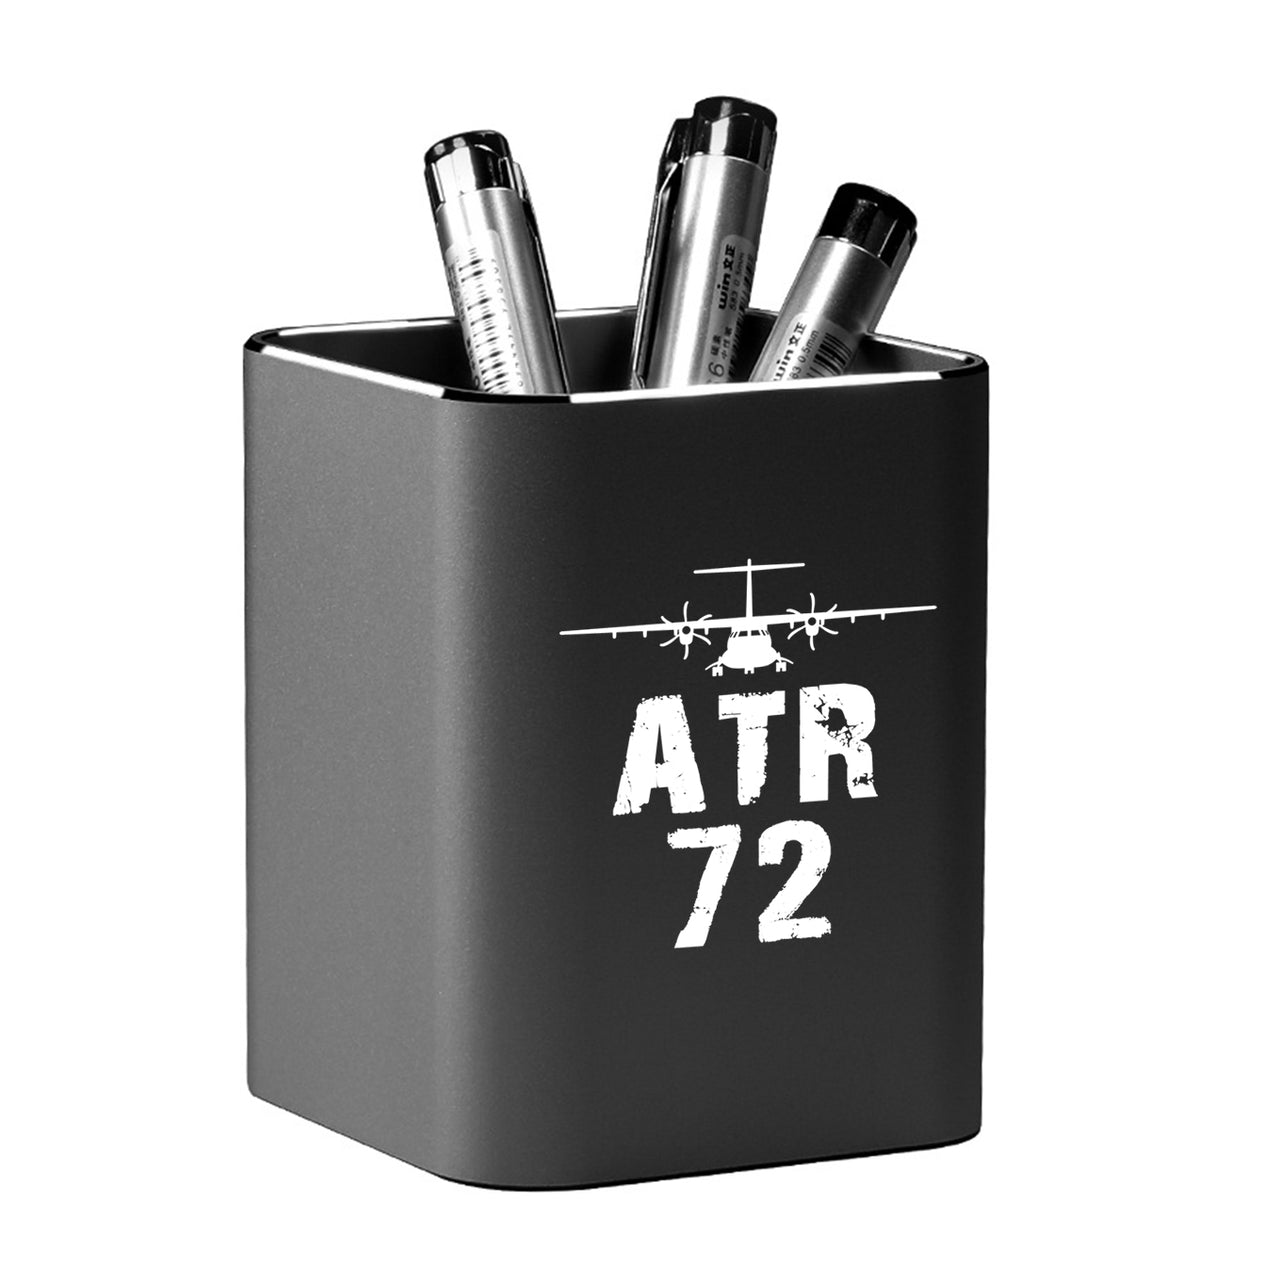 ATR-72 & Plane Designed Aluminium Alloy Pen Holders